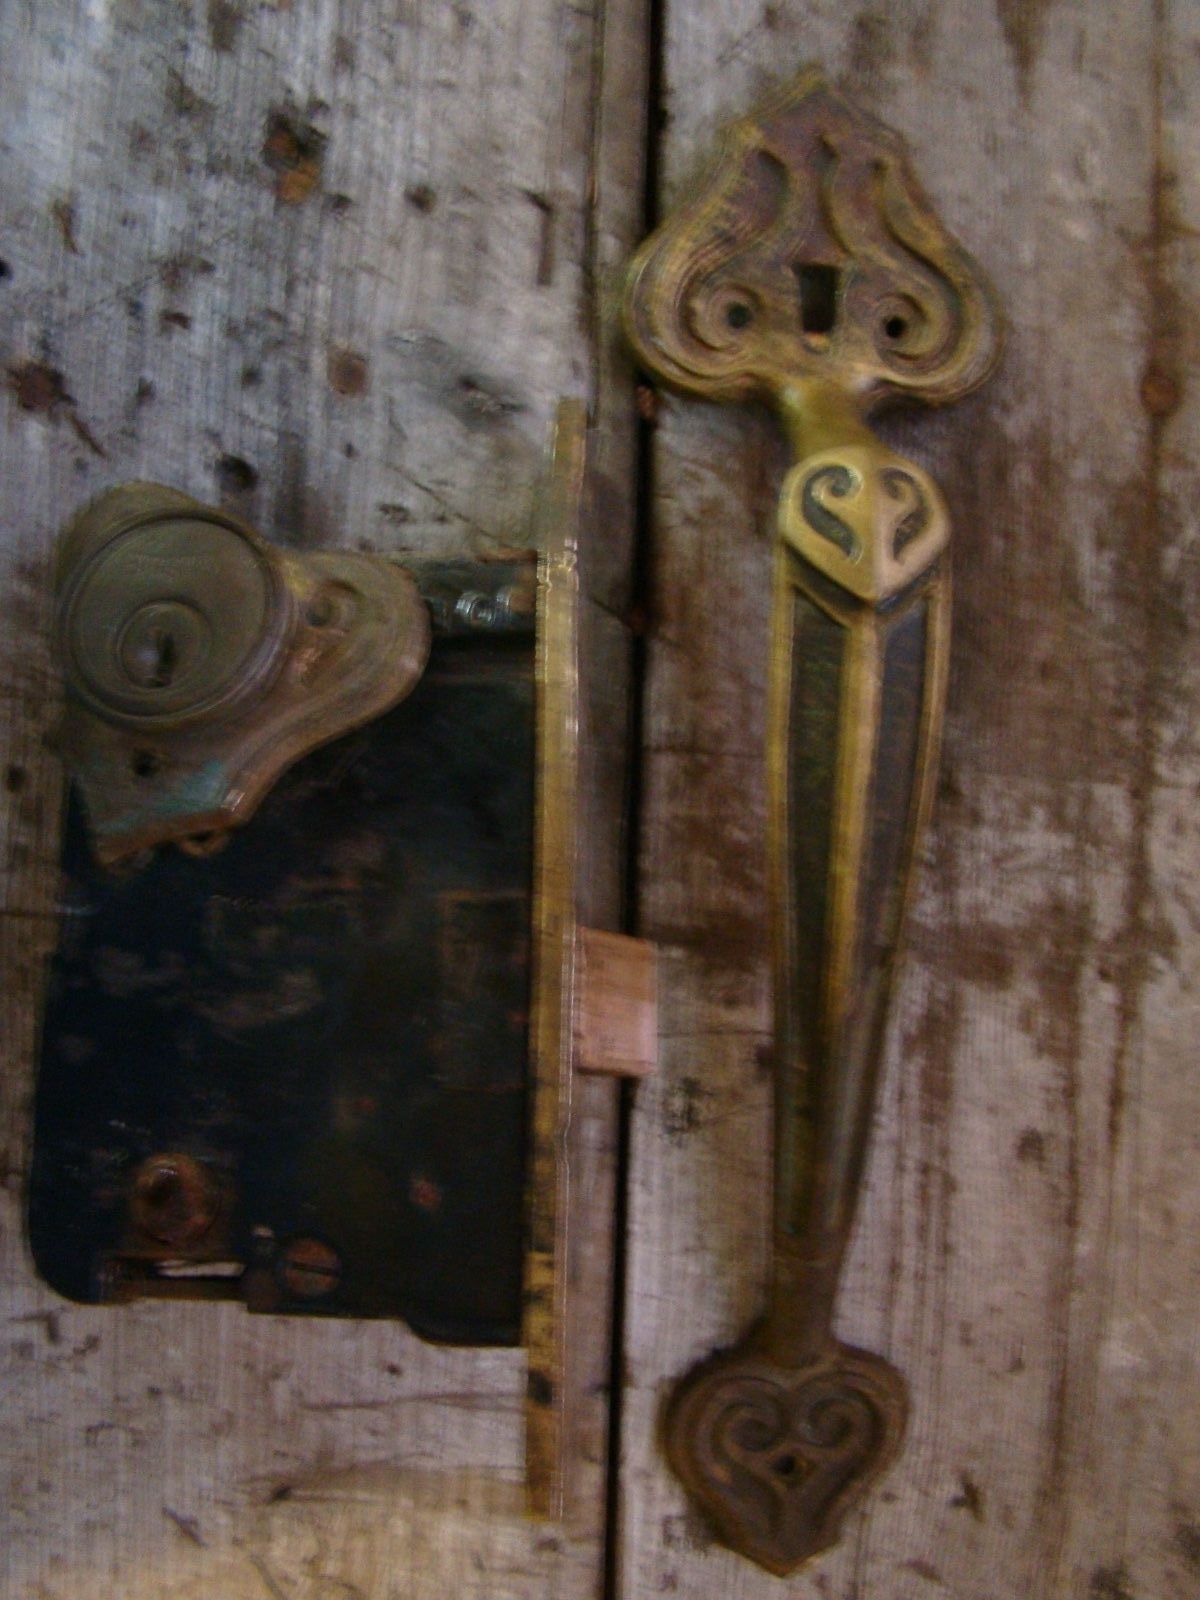 Russwin Antique Brass Lock And Door Handle No Key